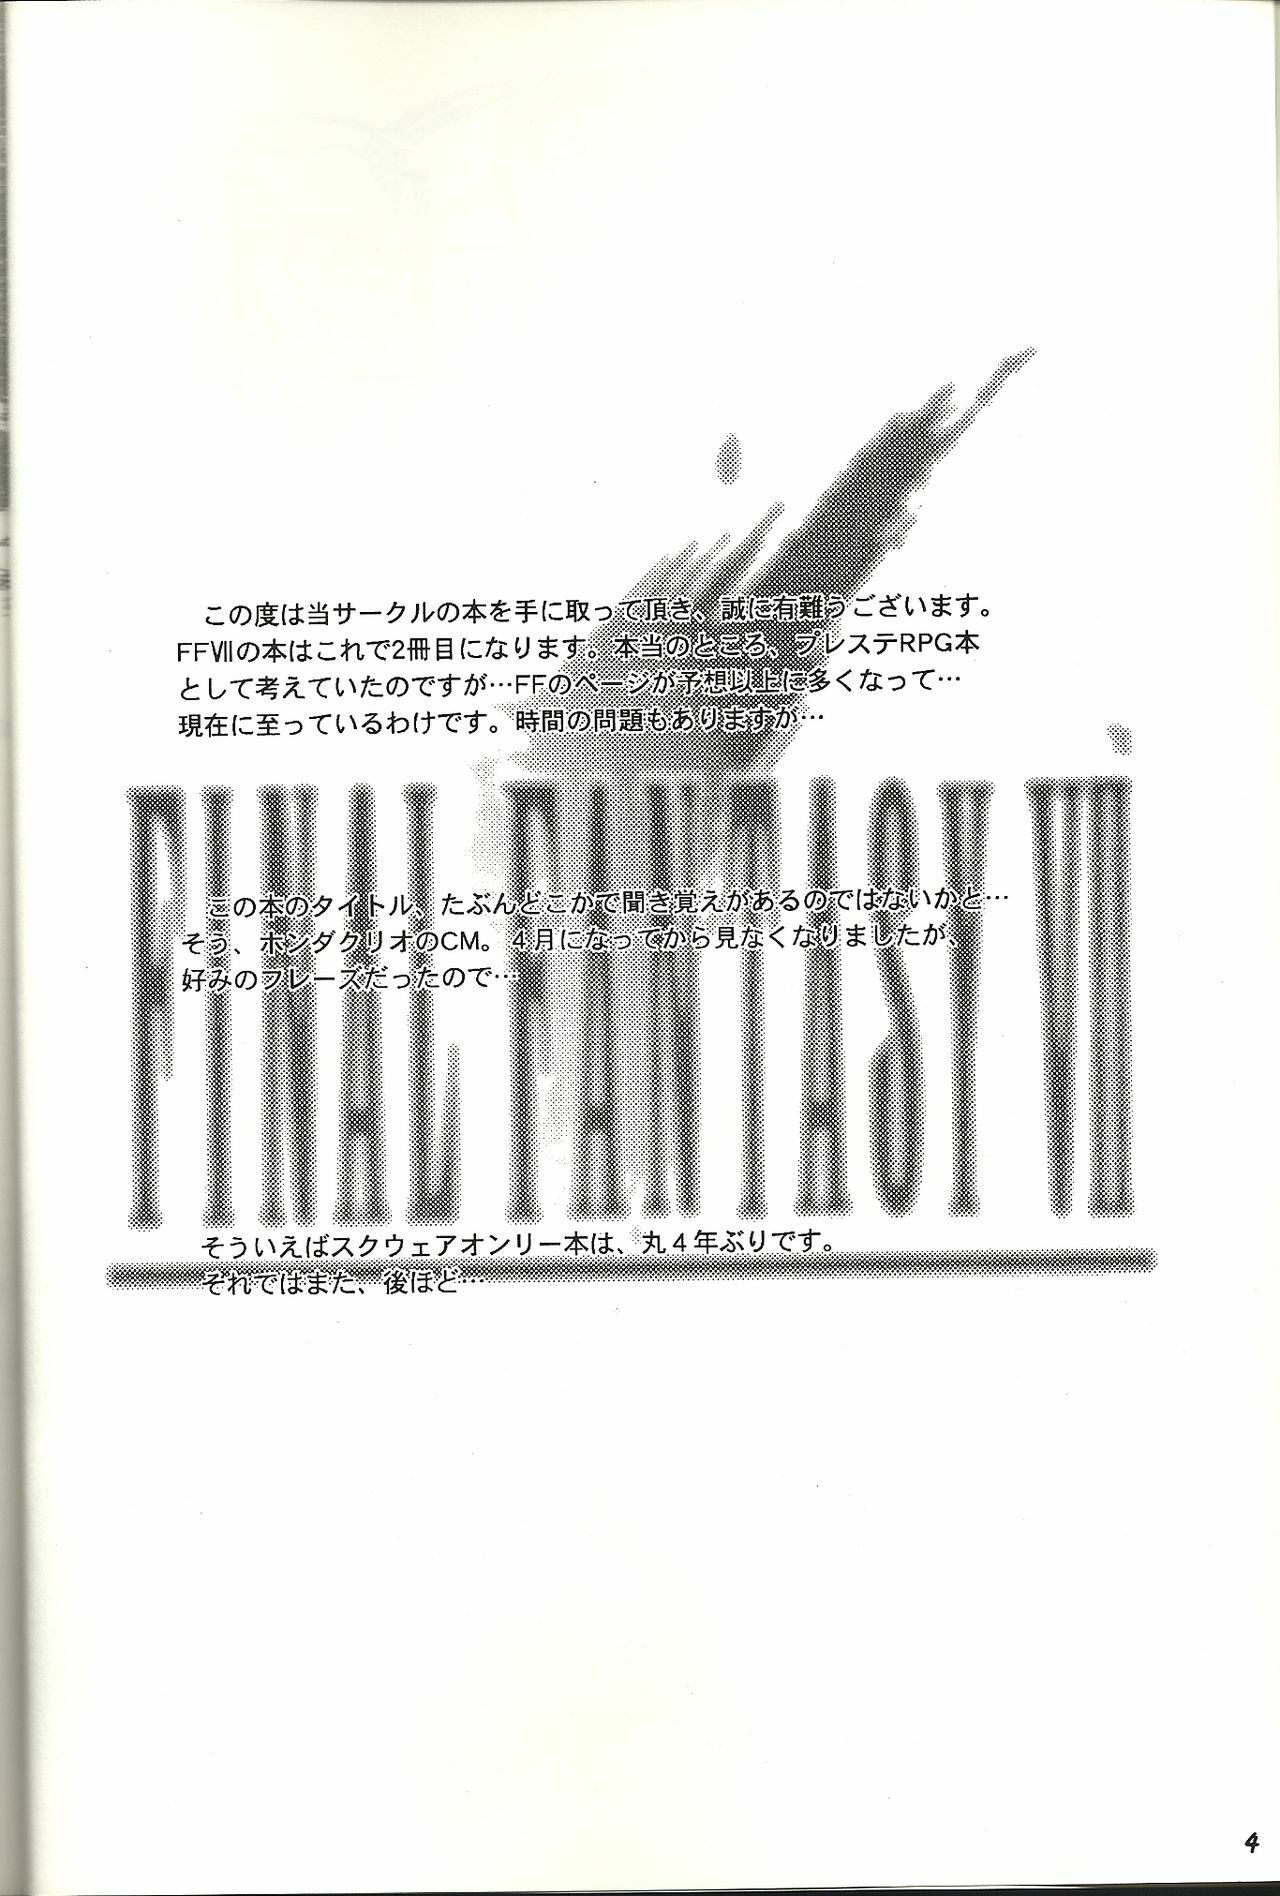 (CR21) [Bakuhatsu BRS. (B.Tarou)] Renai Shiyou (Final Fantasy VII) page 3 full